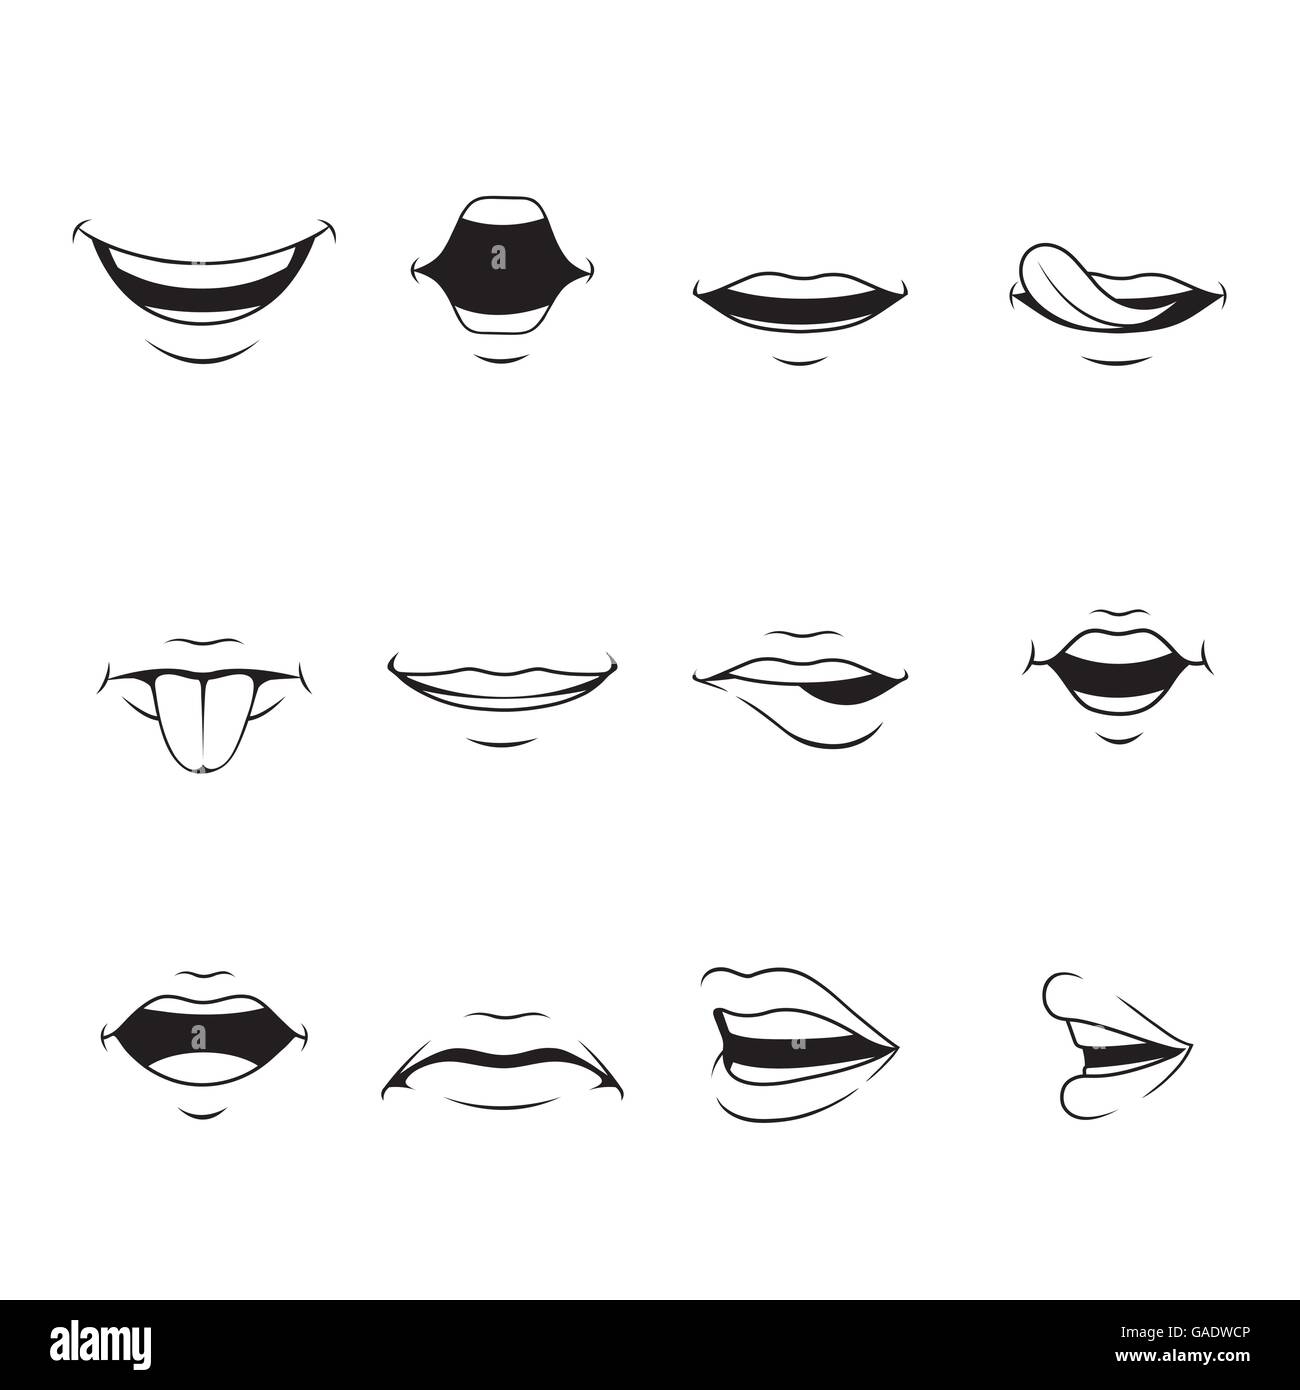 Mund-Set mit verschiedenen Ausdrücke, Monochrom, Orgel, Emoji, Gesichtsausdruck, menschliches Gesicht, Gefühl, Stimmung, Persönlichkeit, symbol Stock Vektor